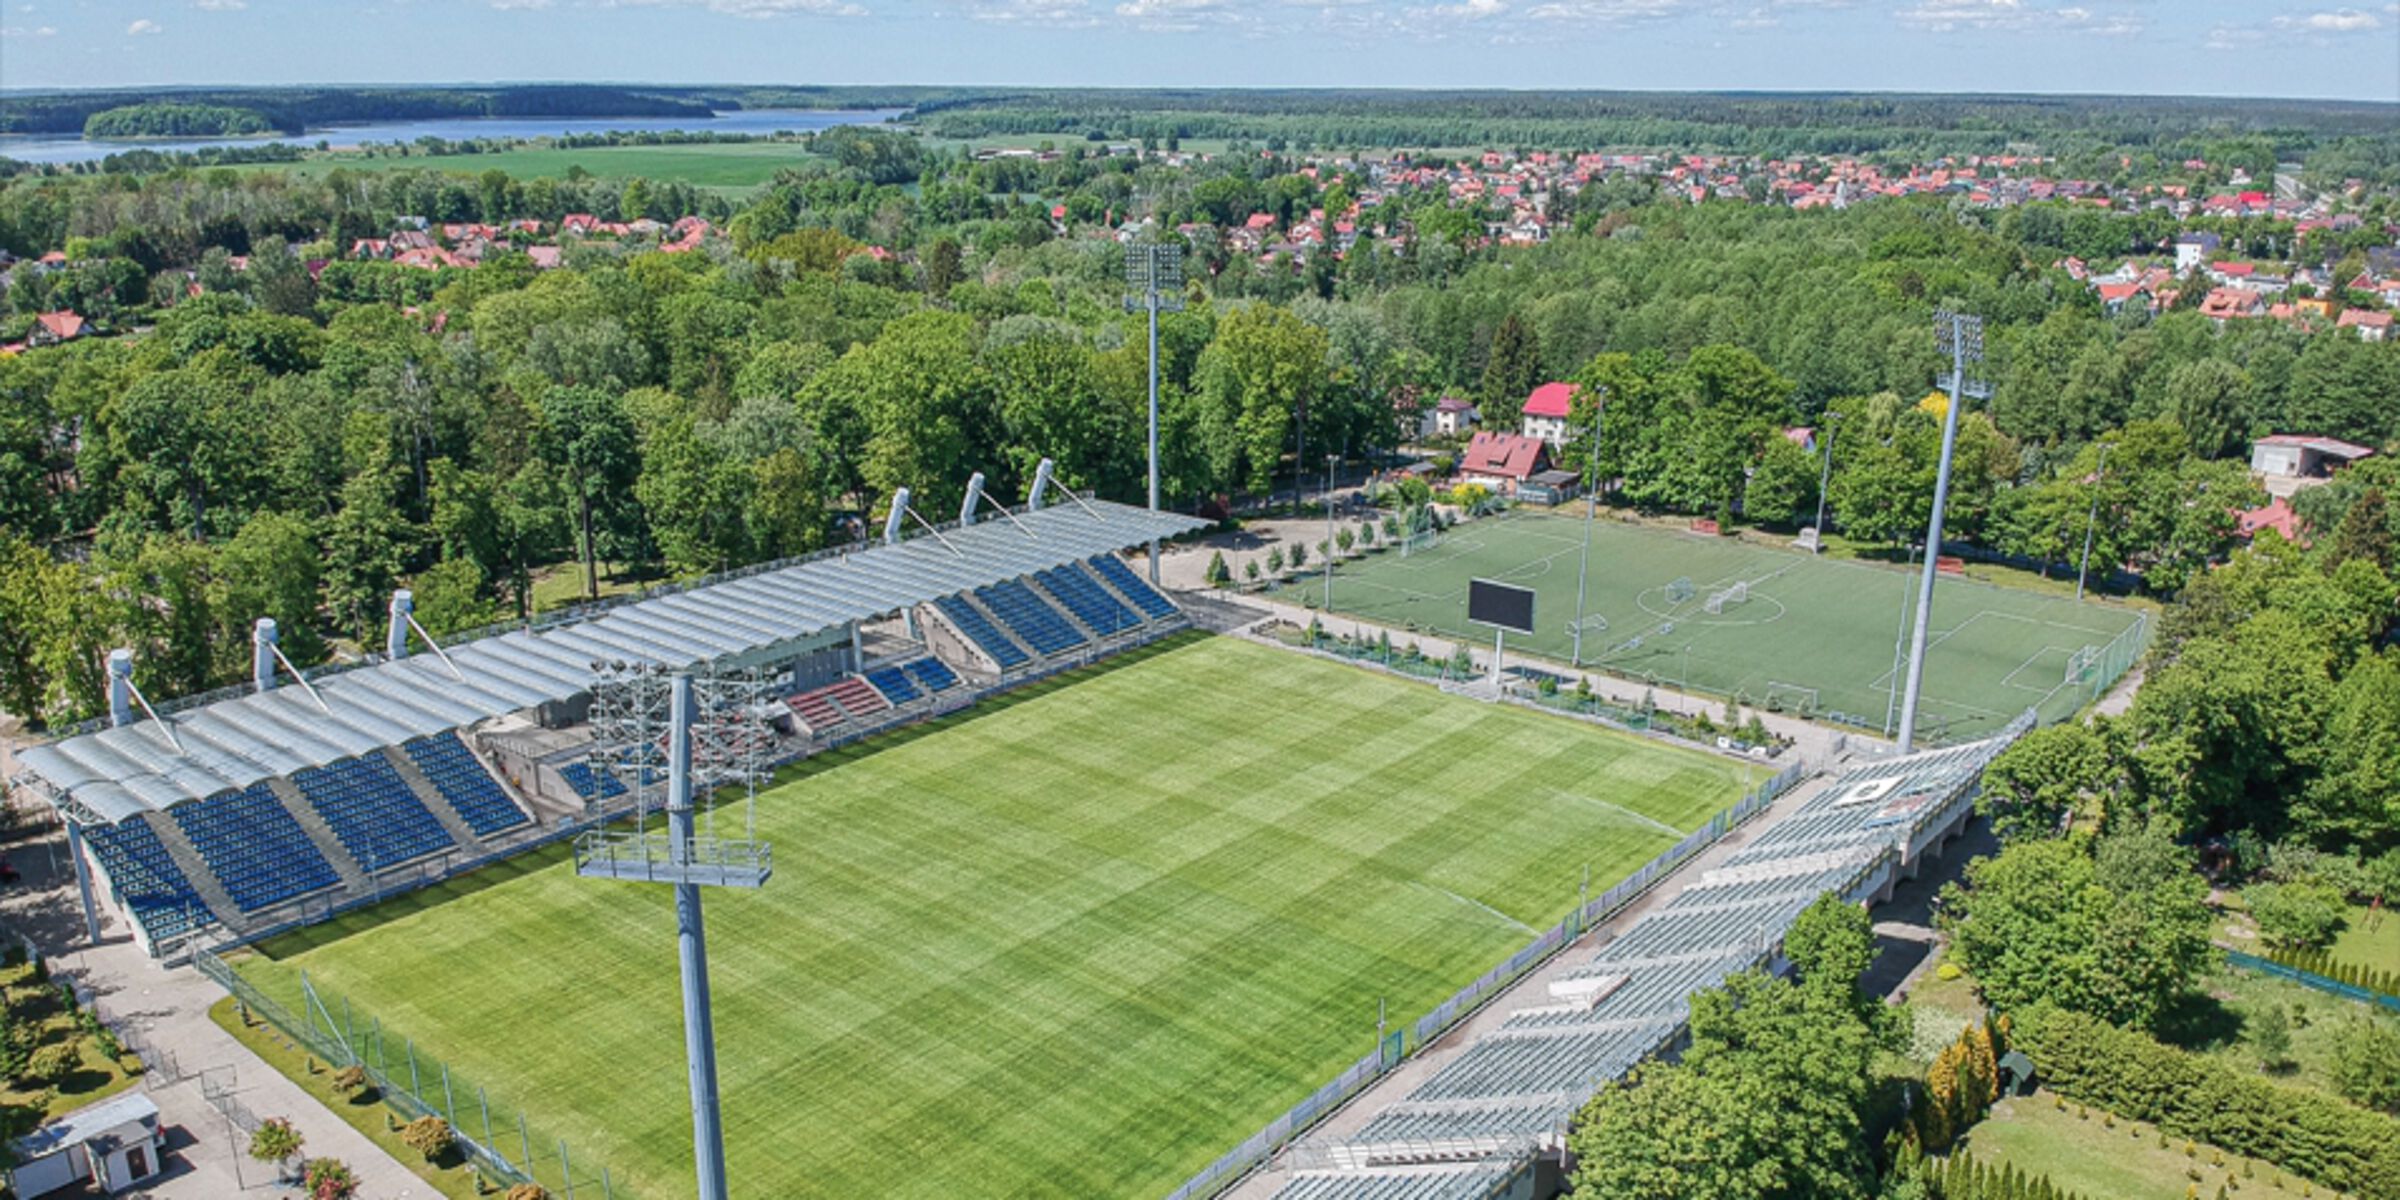 Stadion miejski w Ostródzie. Fot. wmzpn.pl